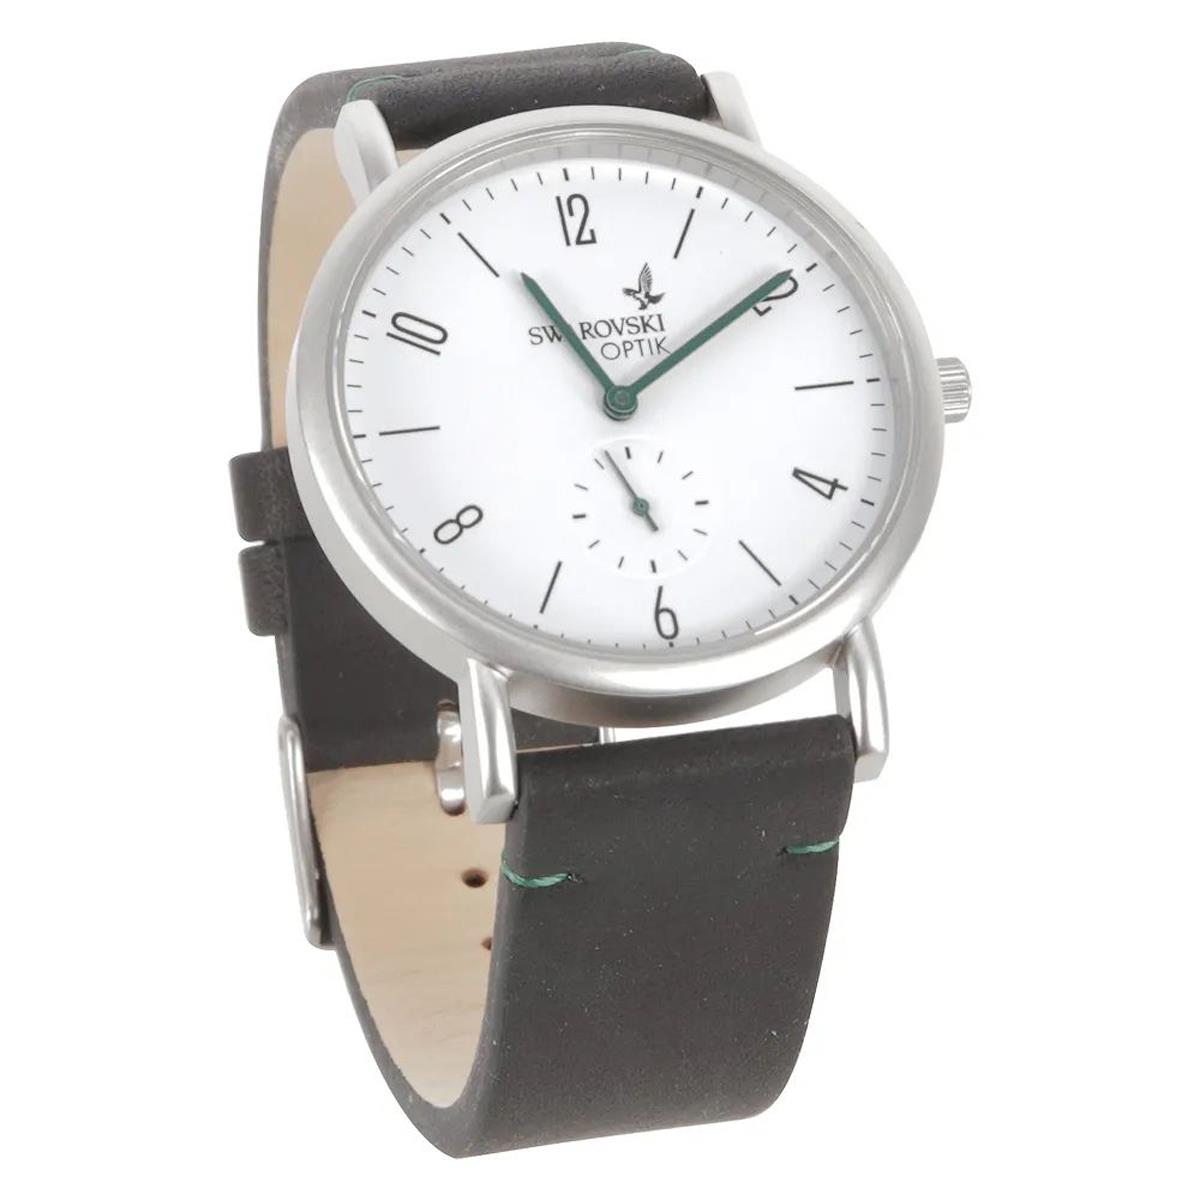 Image of Swarovski Optik Classic Wristwatch